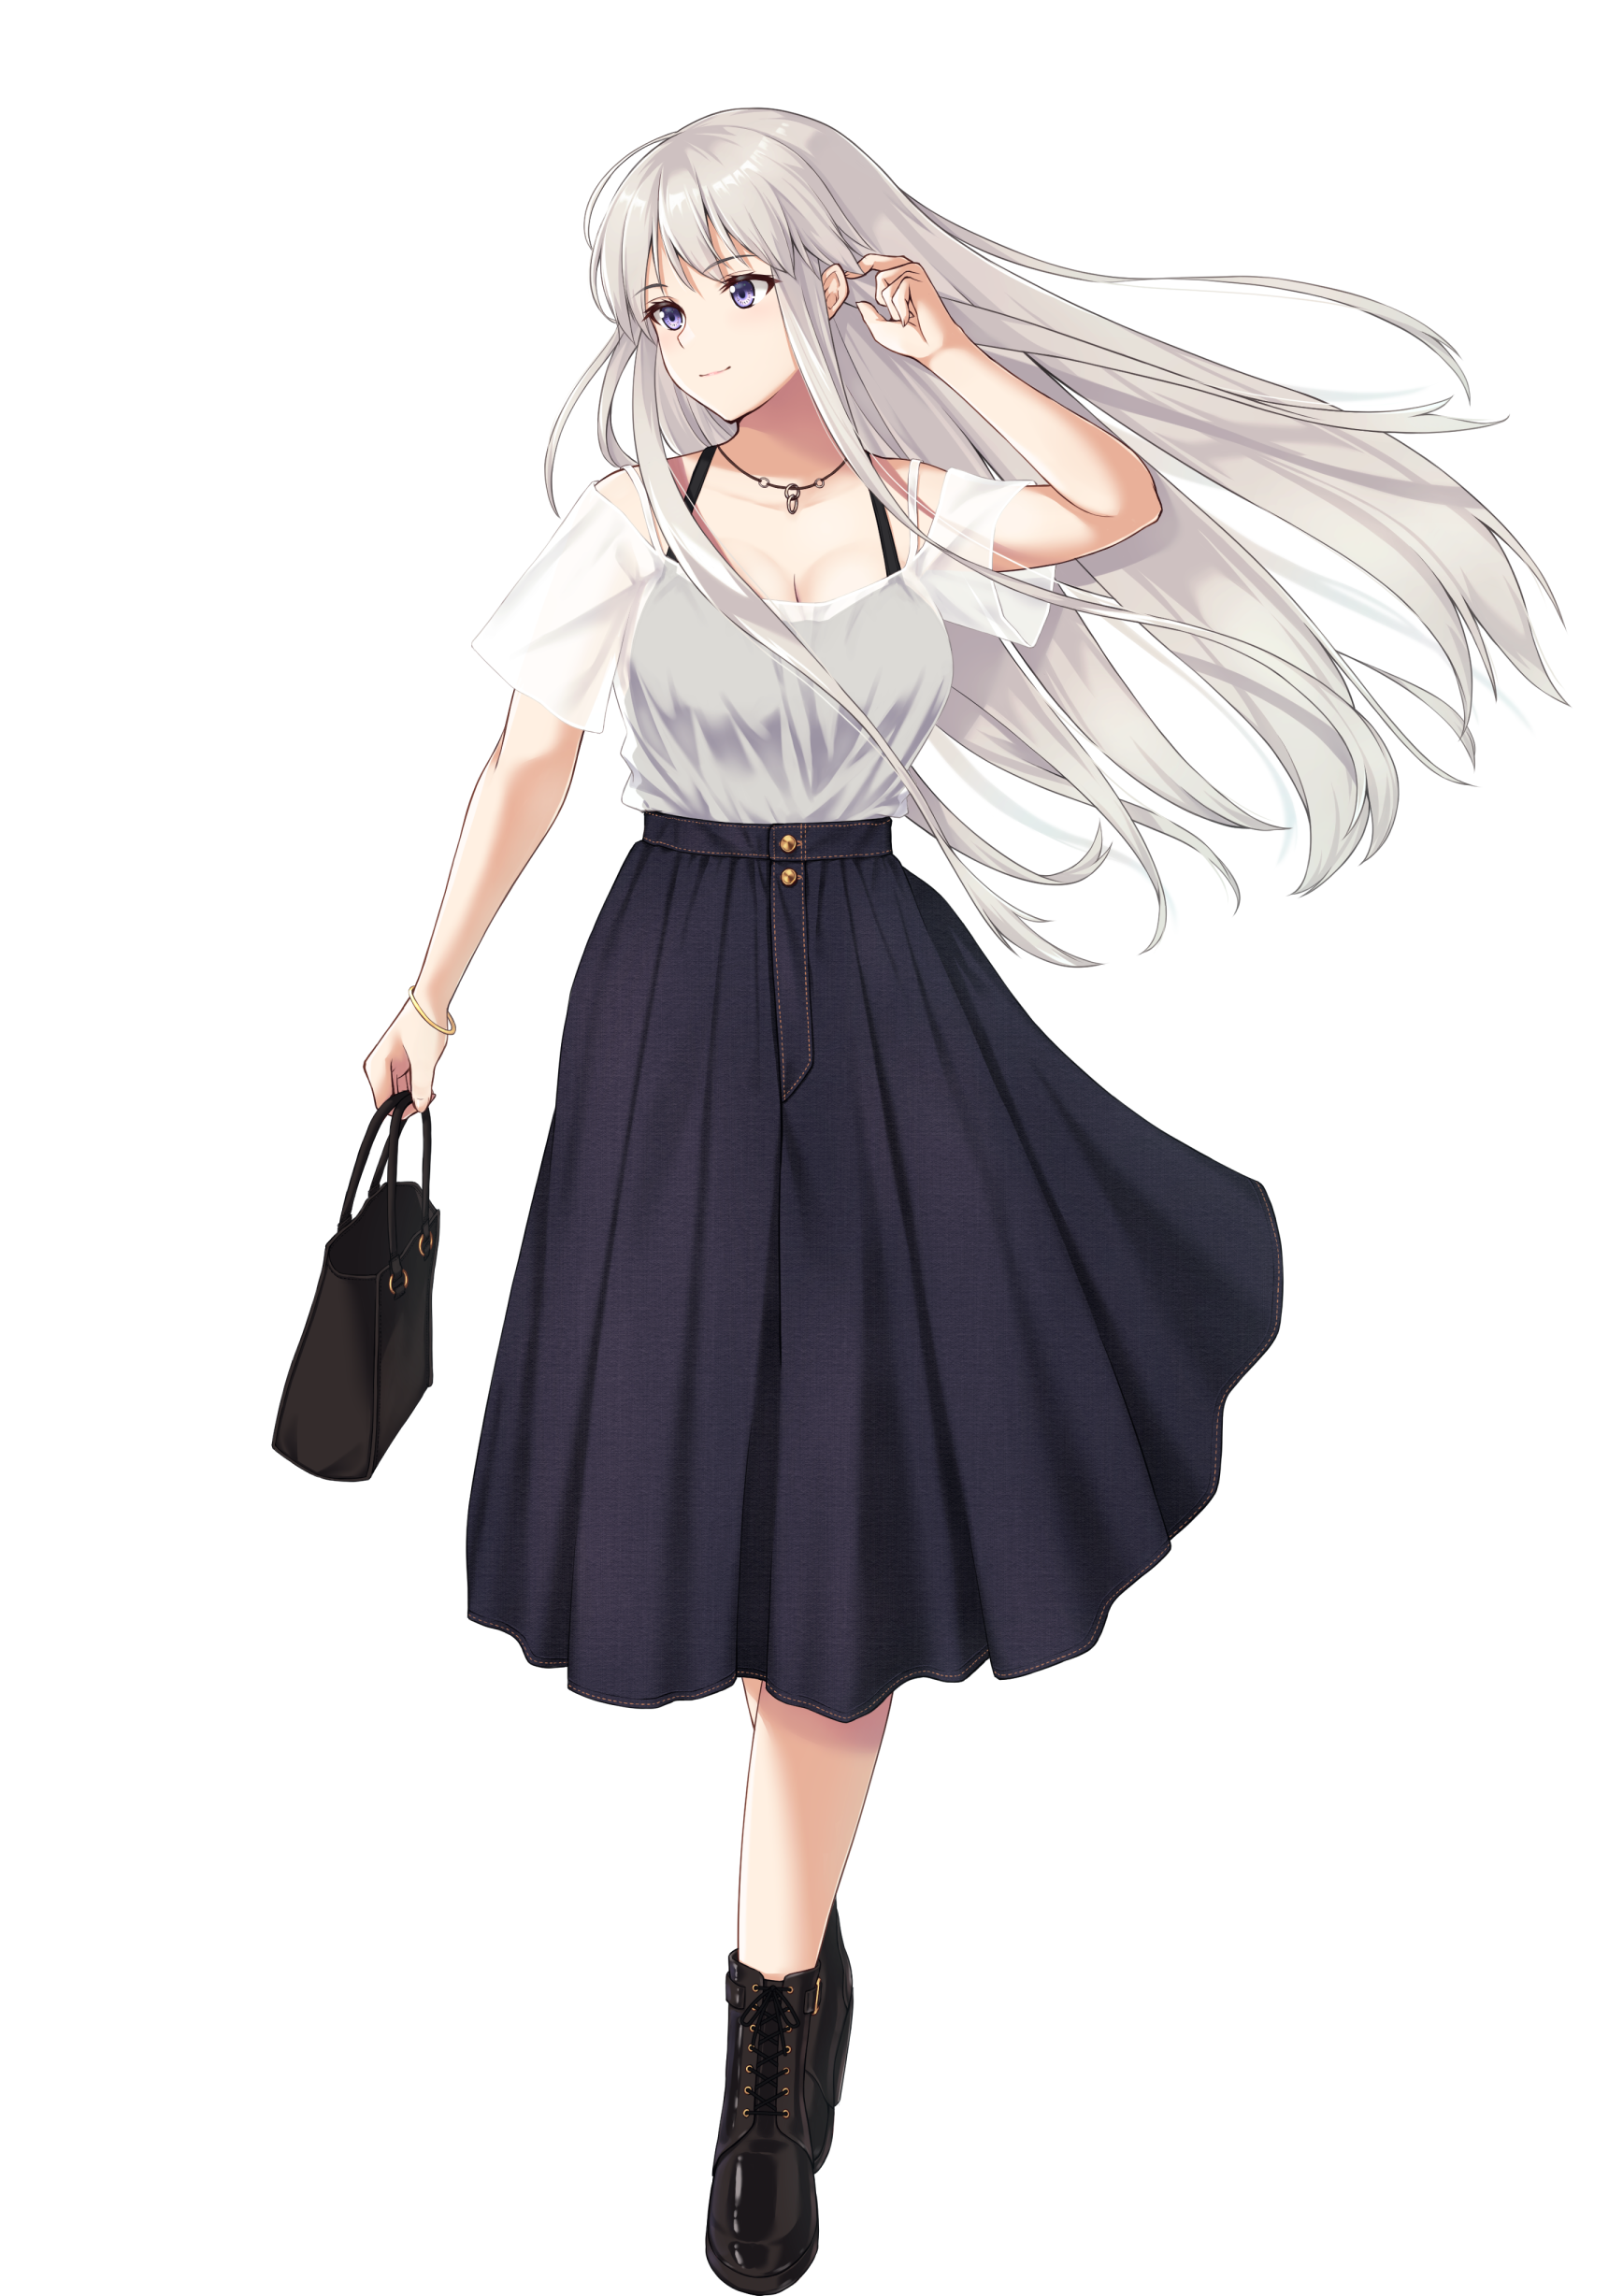 Anime Anime Girls Azur Lane Enterprise Azur Lane Long Hair White Hair Solo Artwork Digital Art Fan A 1736x2456